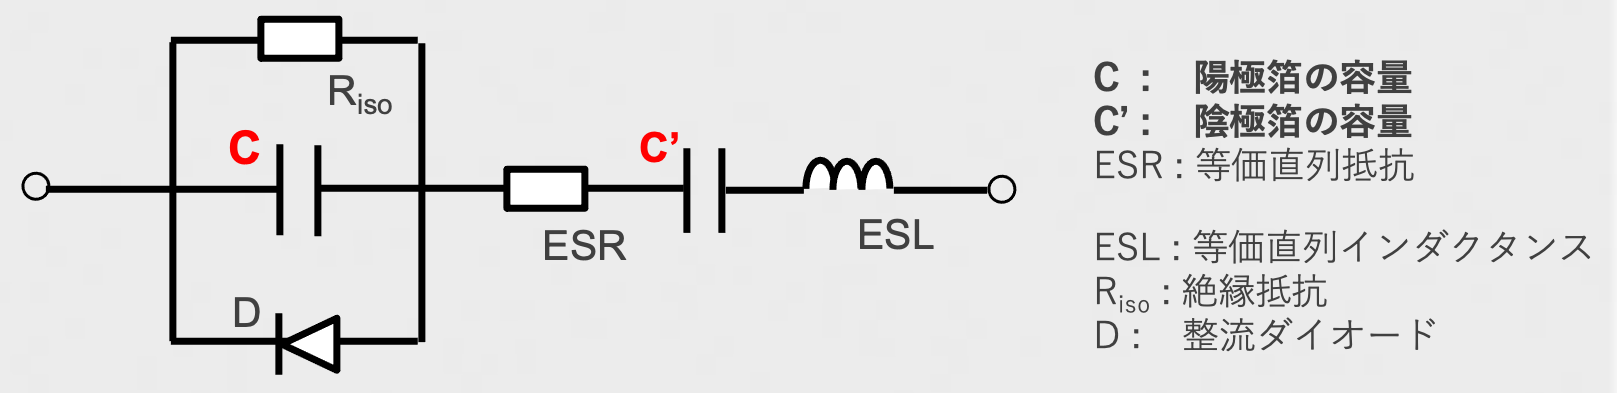 図16 アルミ電解コンデンサの等価回路